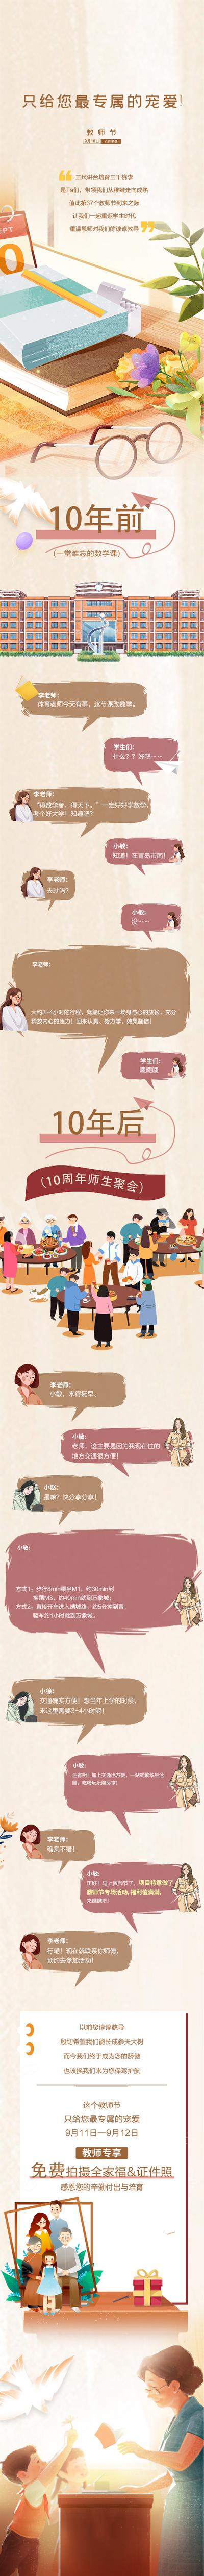 南门网 广告 海报 长图 推文 教师节 对话 创意 回忆